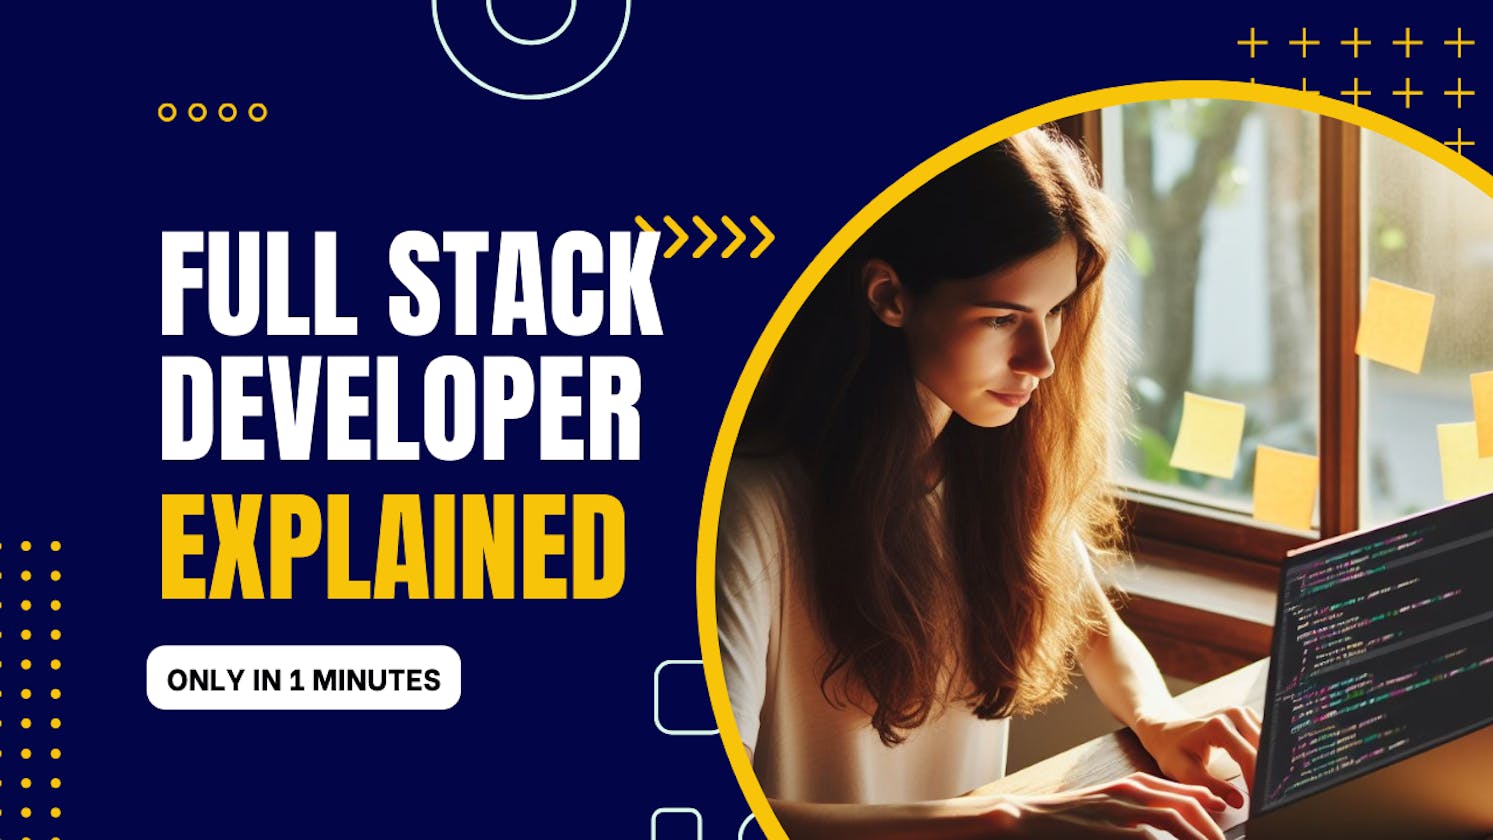 Full stack developer Explained